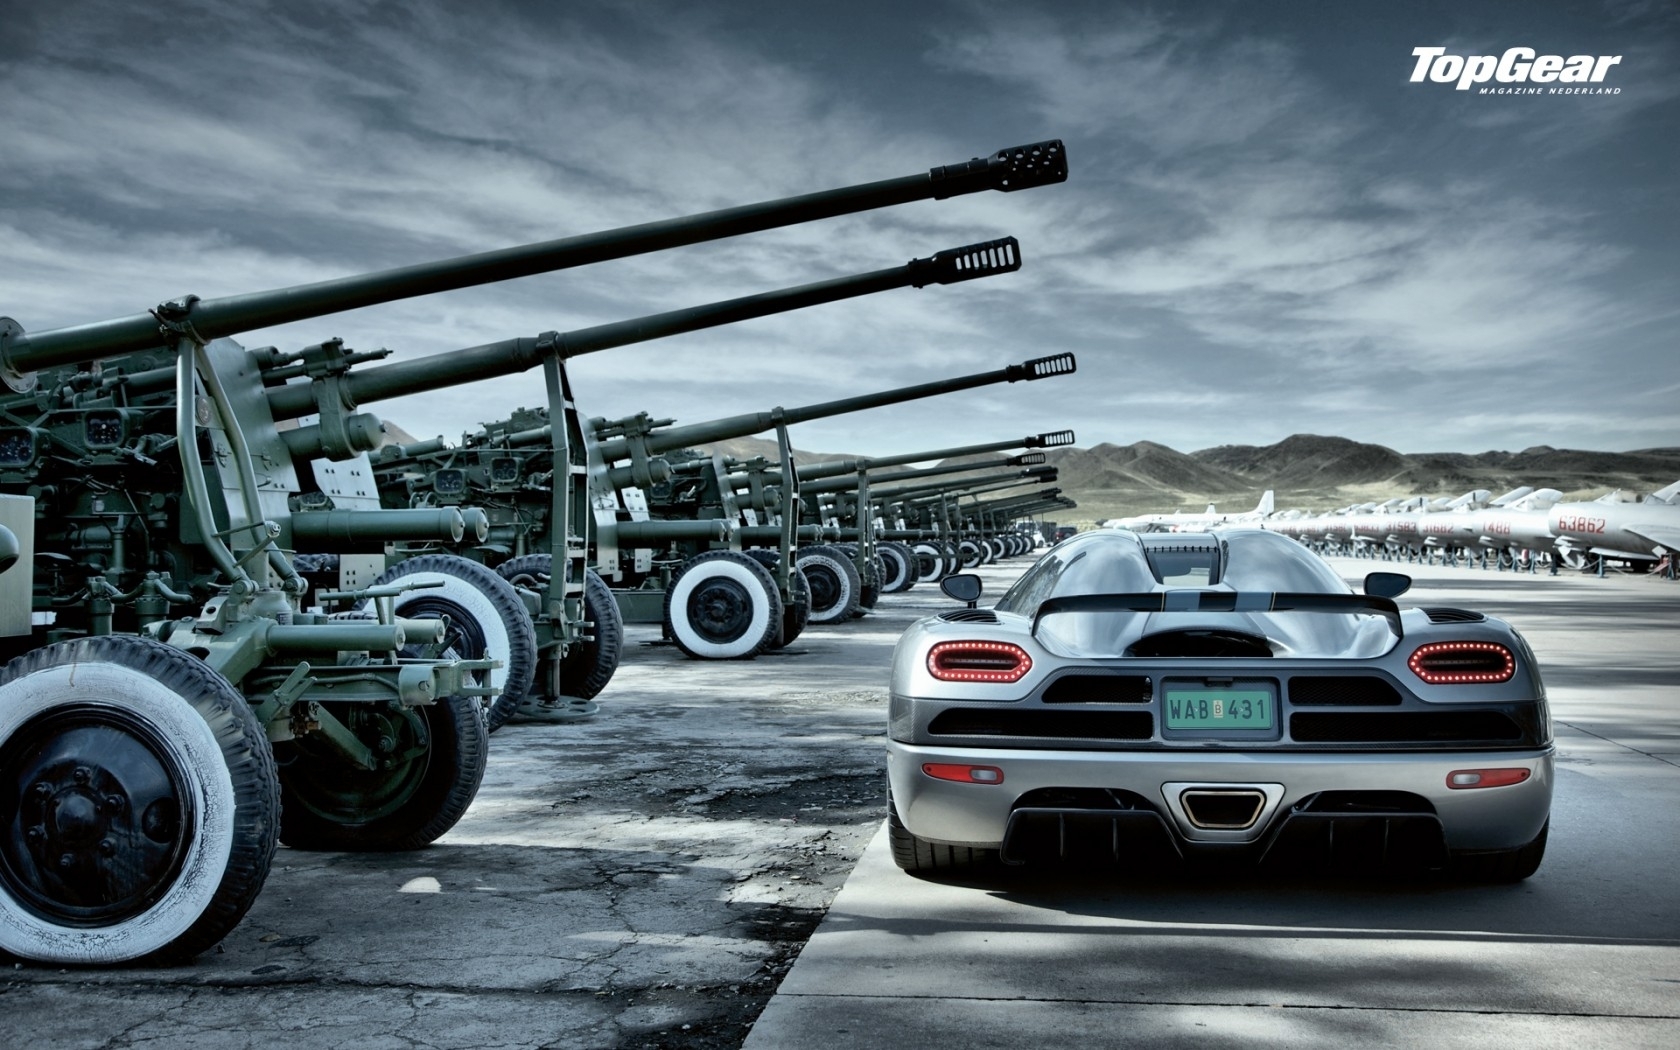 Guns Cars Top Gear Koenigsegg Cold War Artillery Jet - Top Gear - HD Wallpaper 